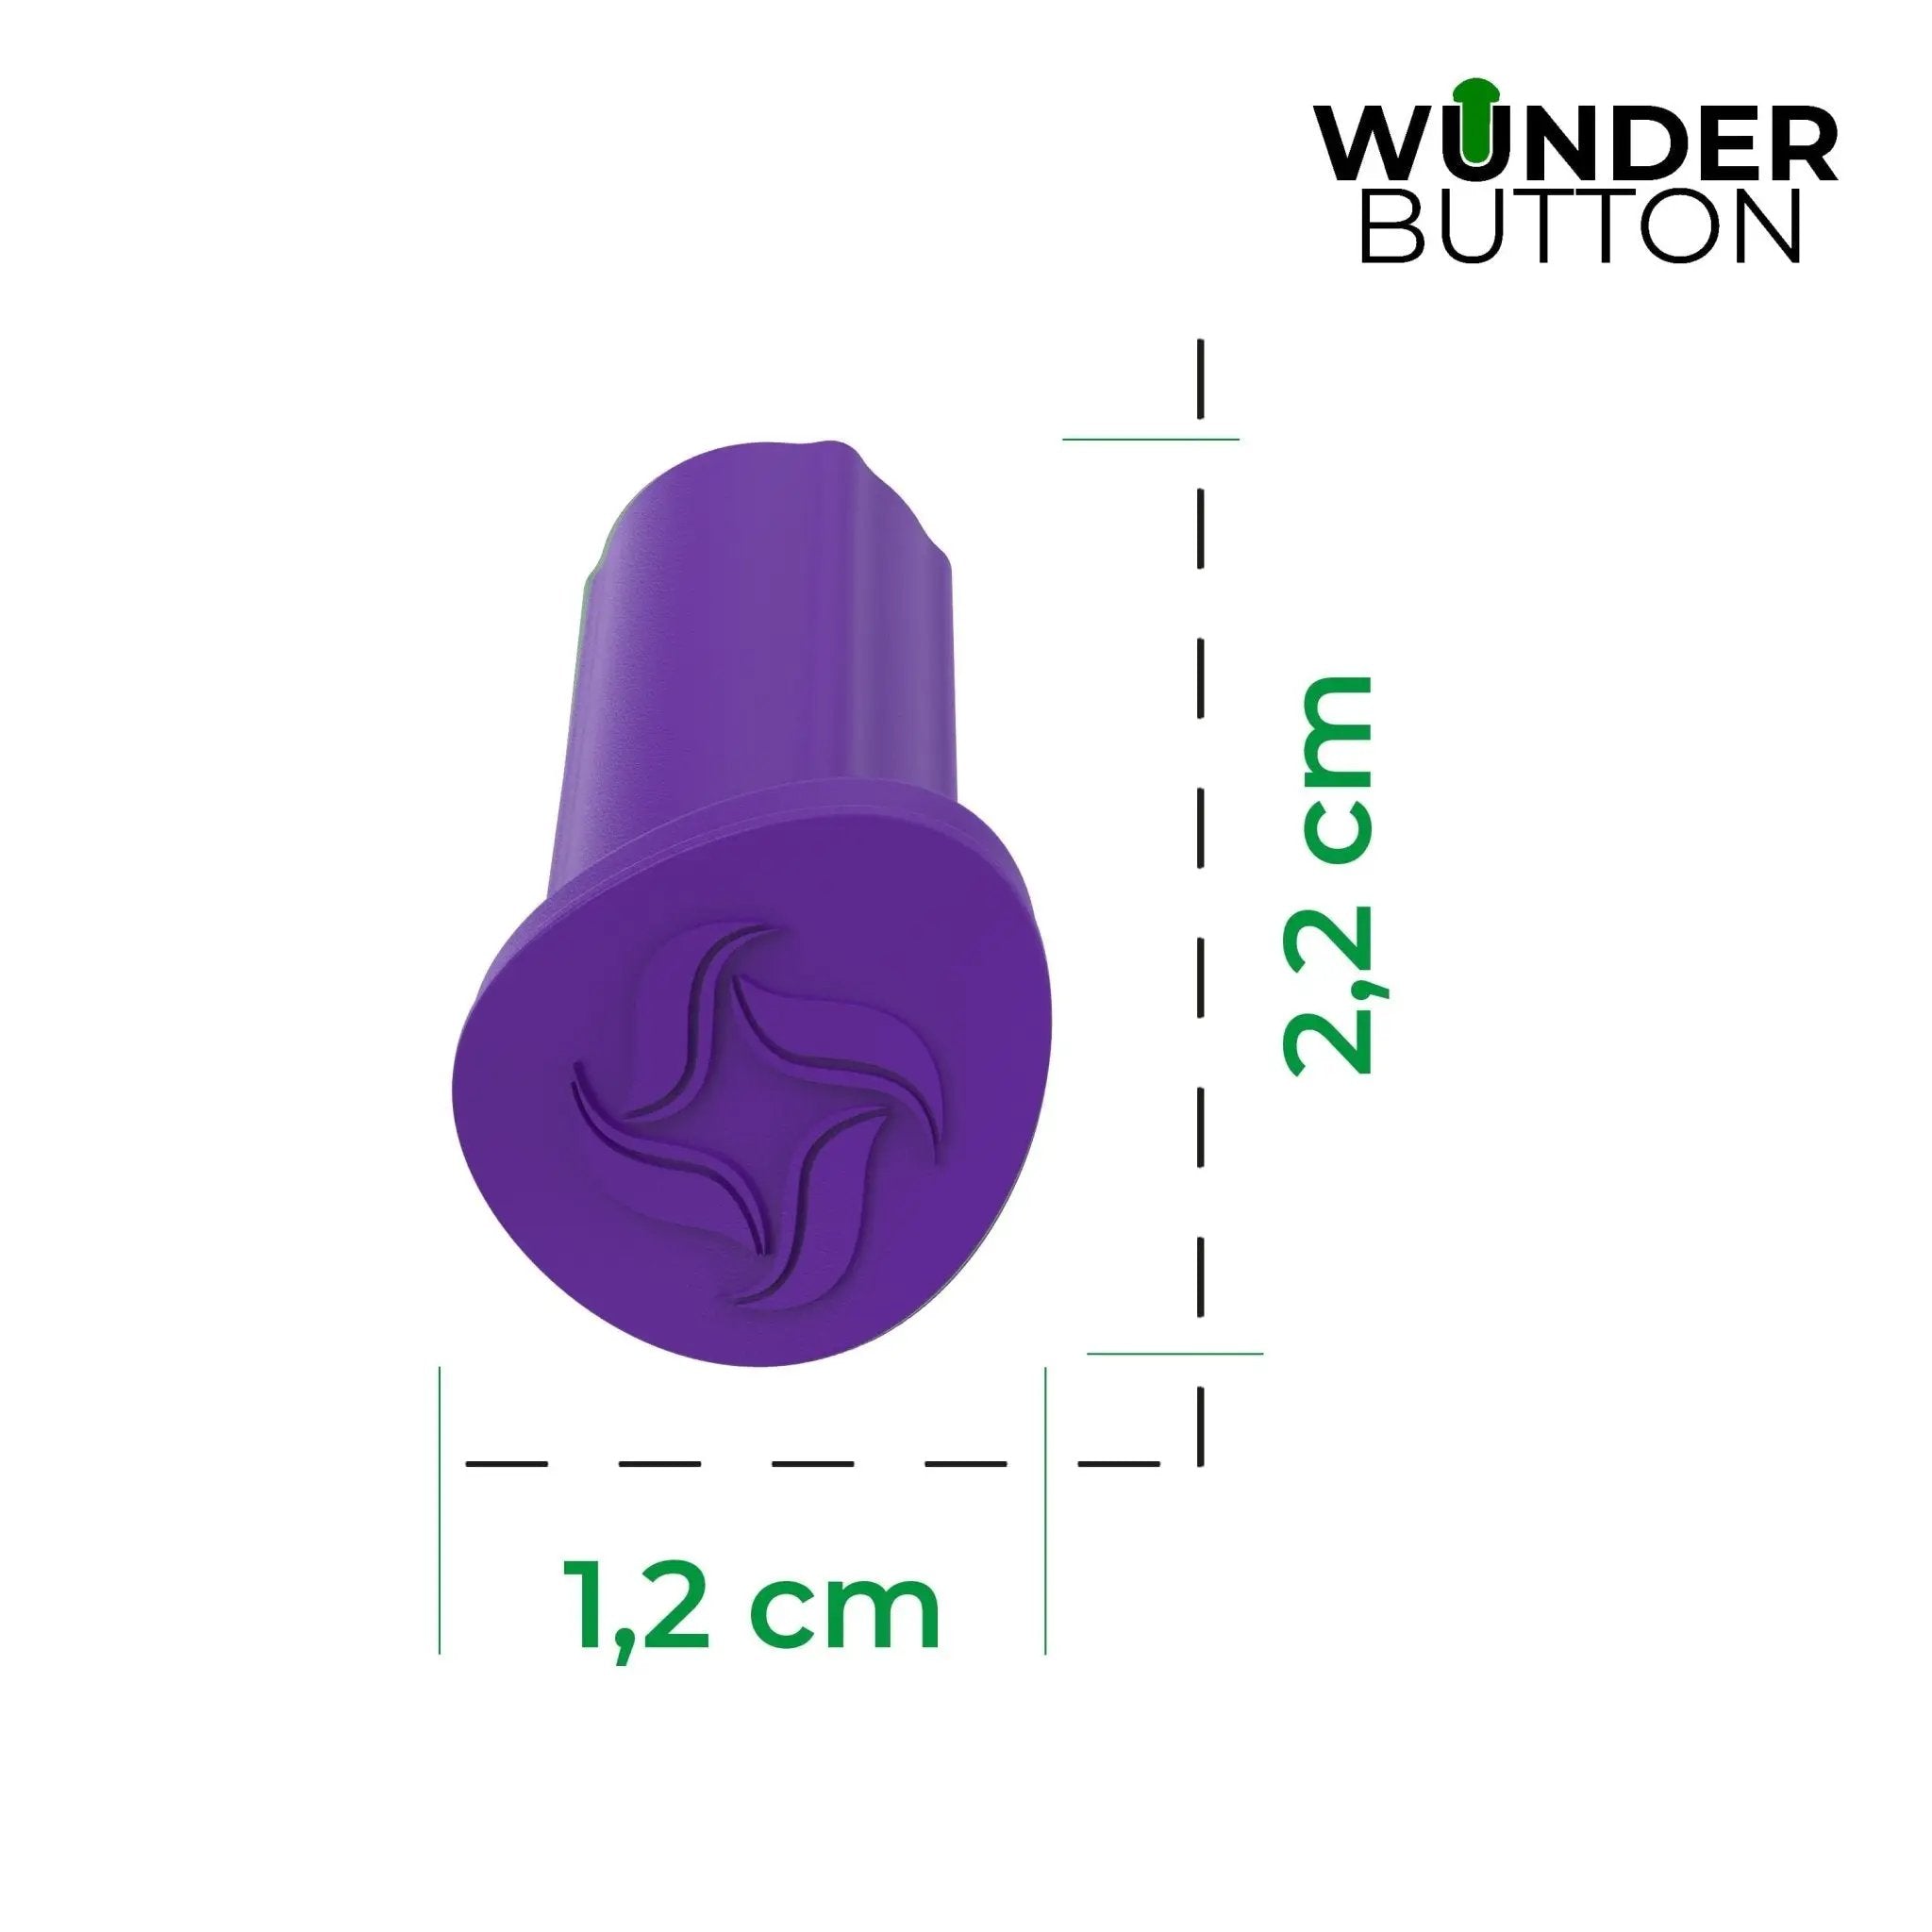 WunderButton® | Verschlussstöpsel für Mixtopf-Griff | TM6, TM5 und TM Friend - Wundermix GmbH